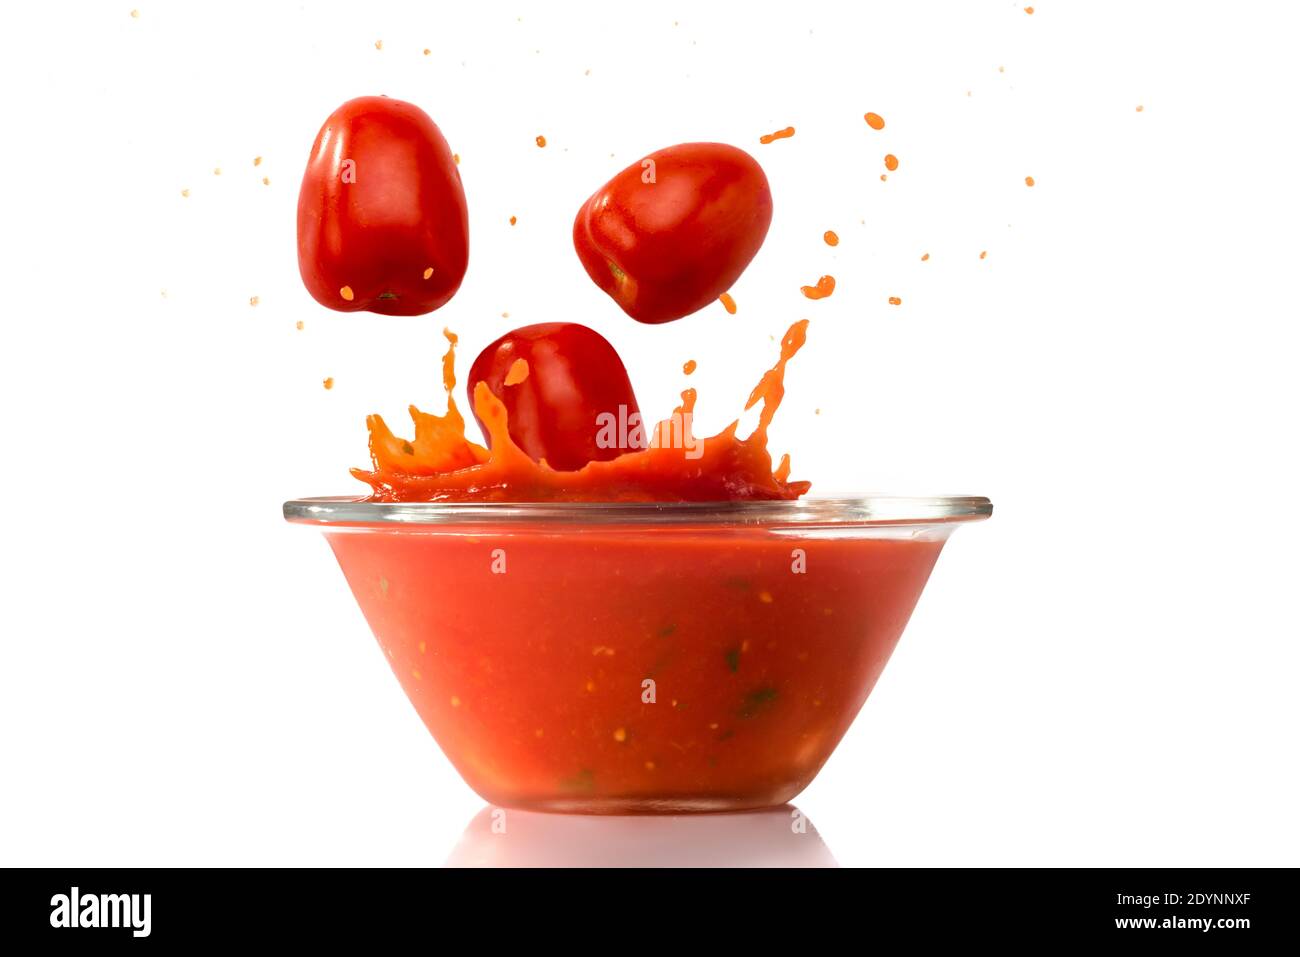 Los tomates maduros caen en un tazón de vidrio con salsa de tomate rojo salpicado, aislado sobre fondo blanco Foto de stock